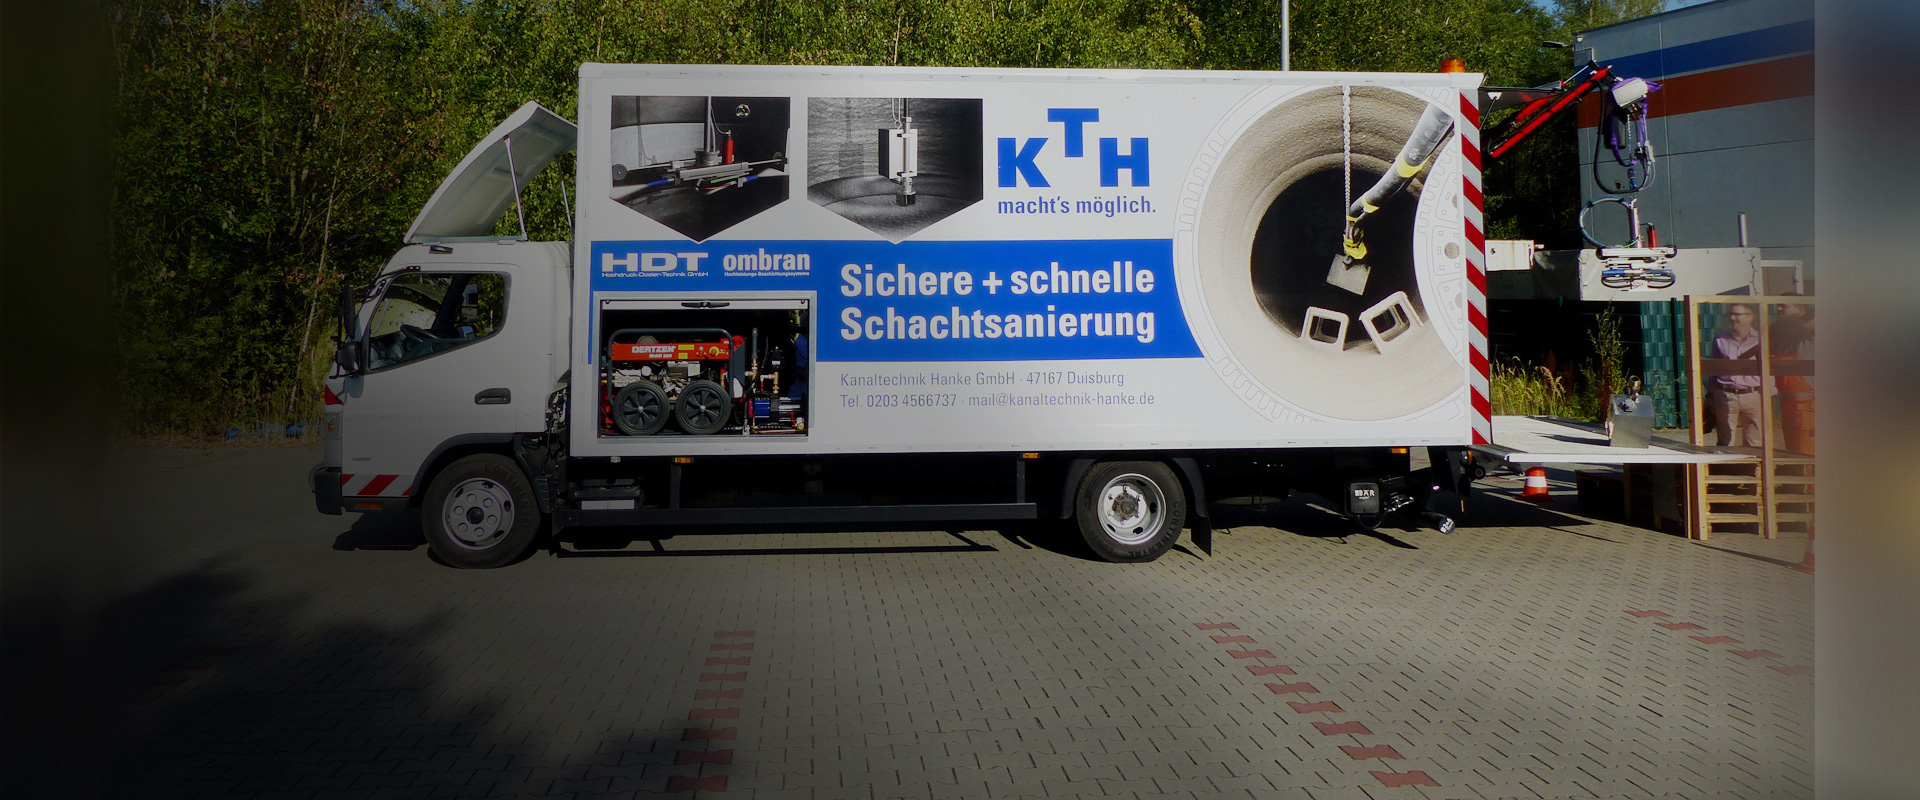 Hanke Kanaltechnik erwirbt Spezial-LKW für Schachtsanierung von HDT